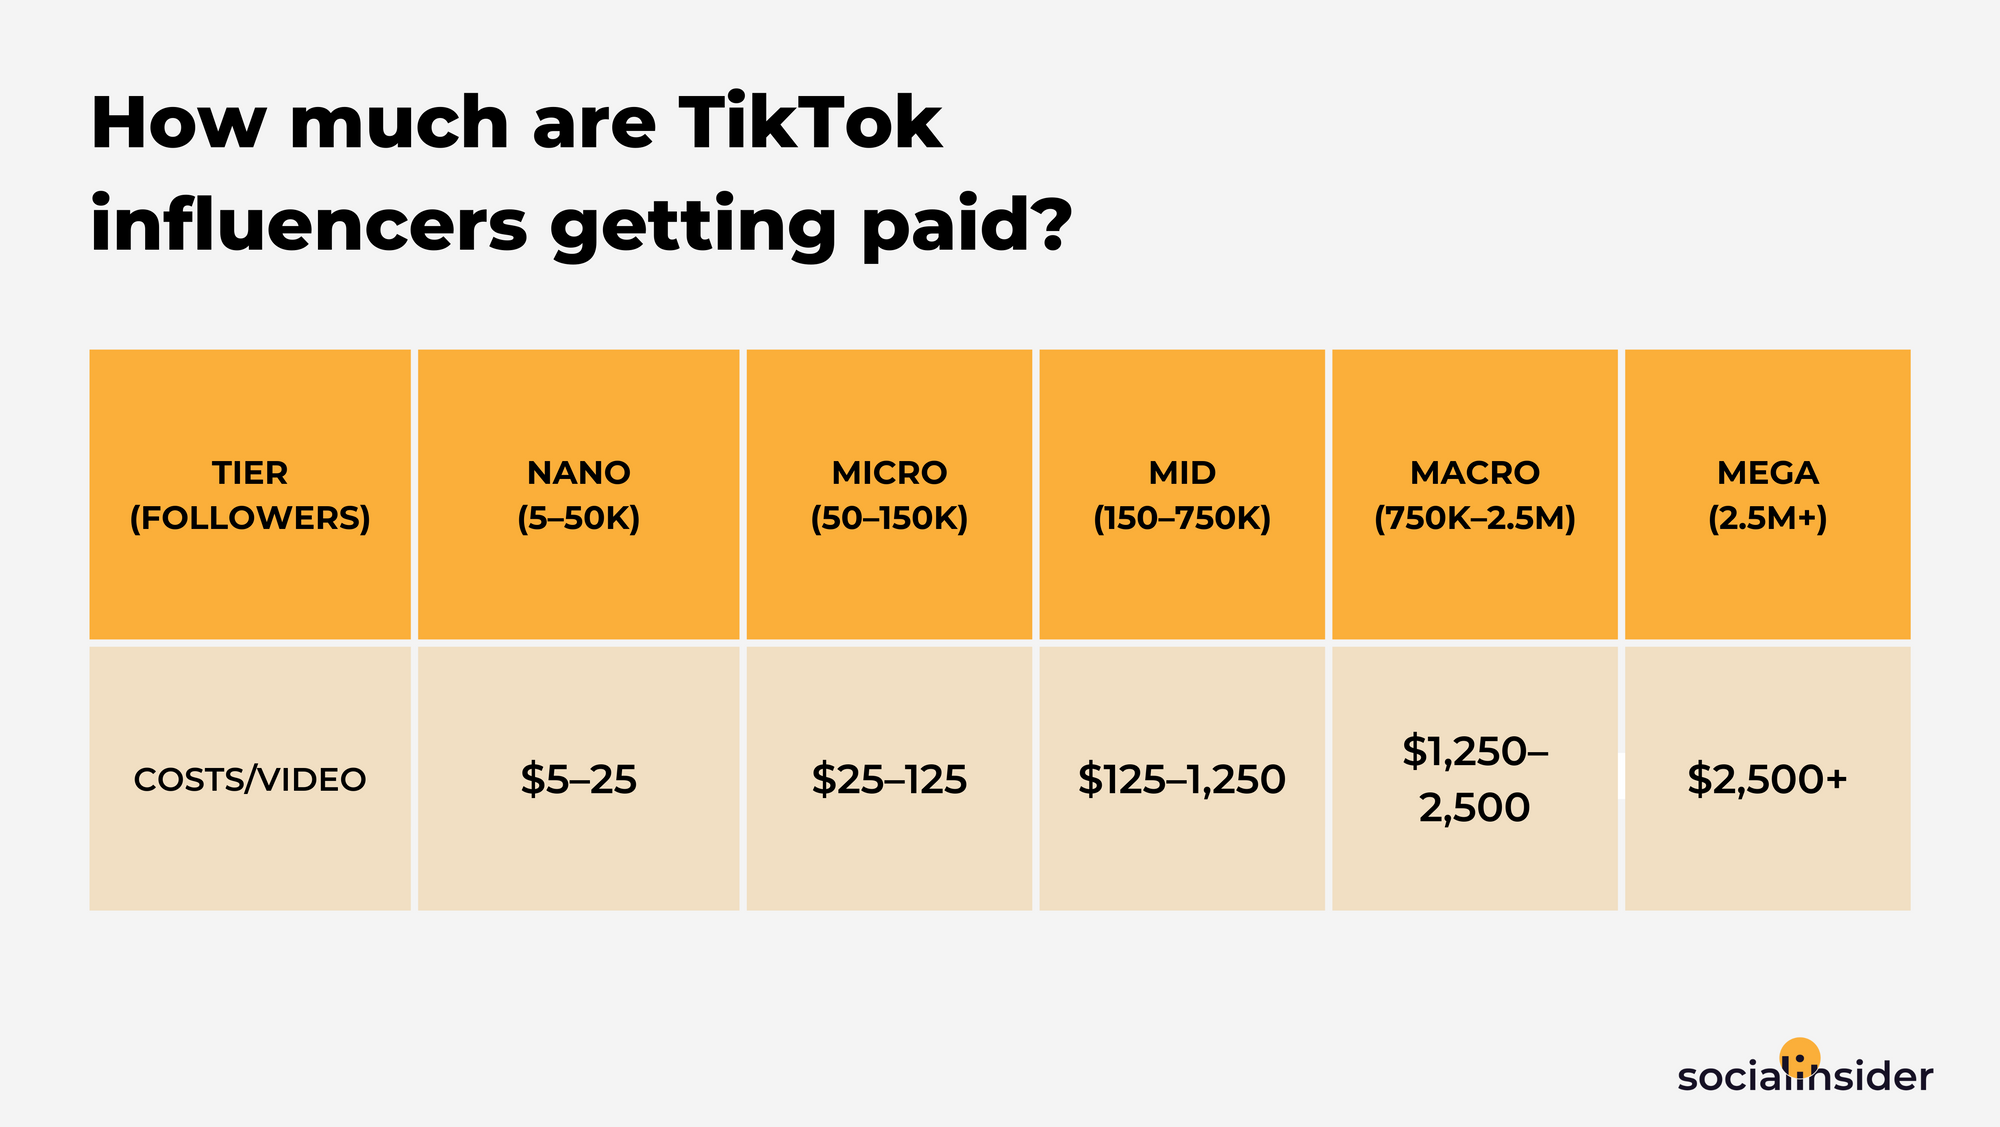 rates for TikTok influencer marketing usage